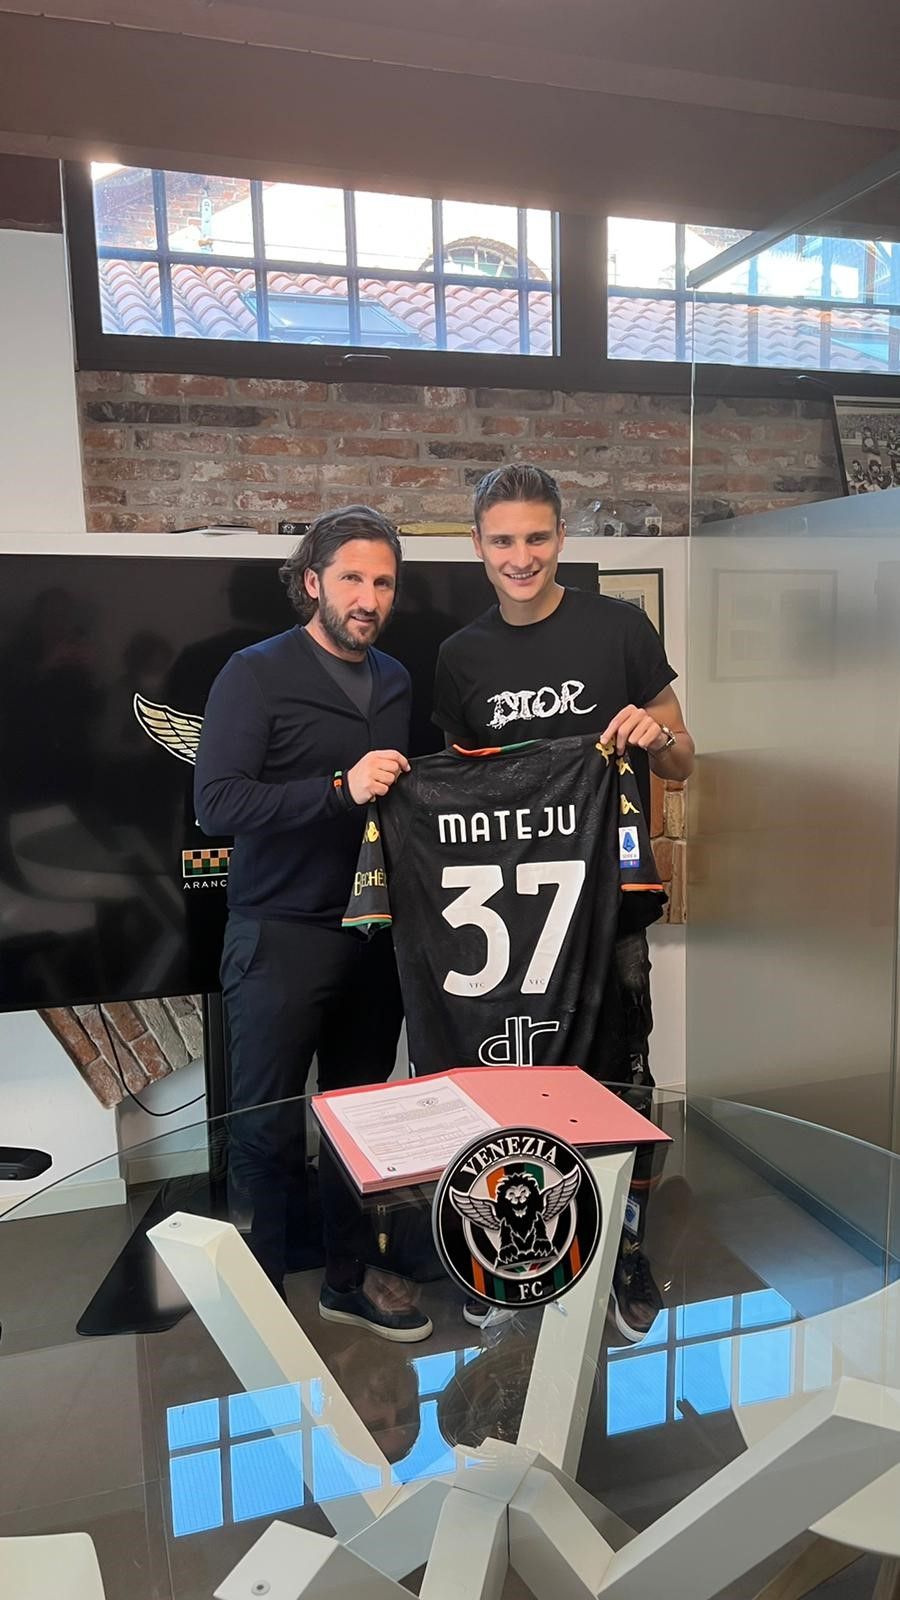 Matějů torna nel campionato italiano.  La nazionale ceca giocherà per il Venezia